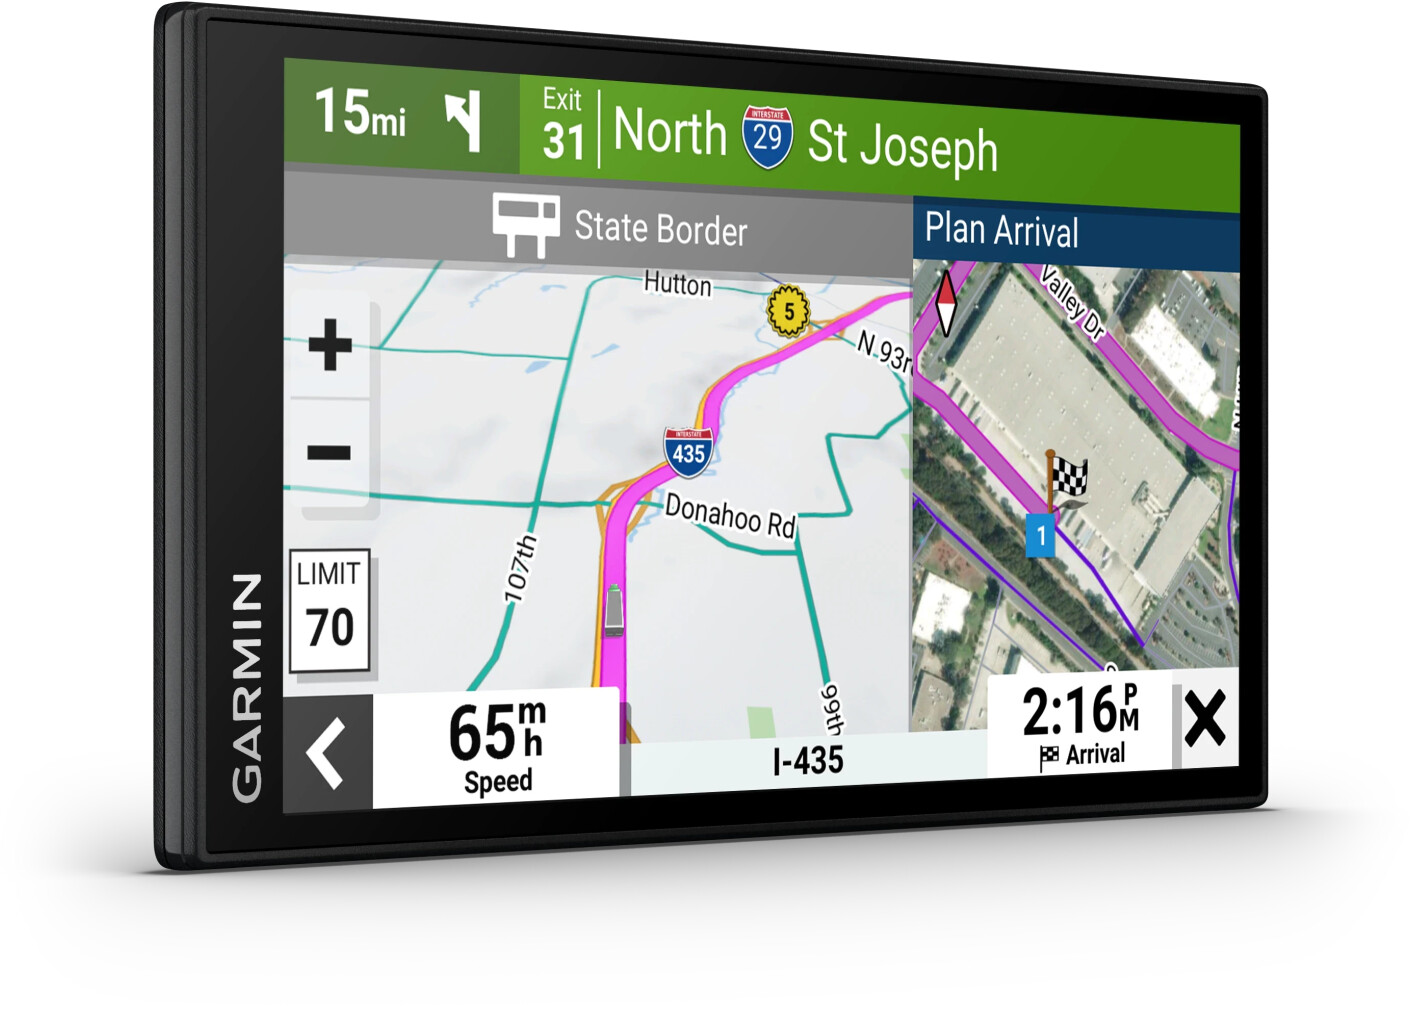 GPS Garmin Gps poids-lourds dezl lgv 610 - - 6 - info trafic en temps réel